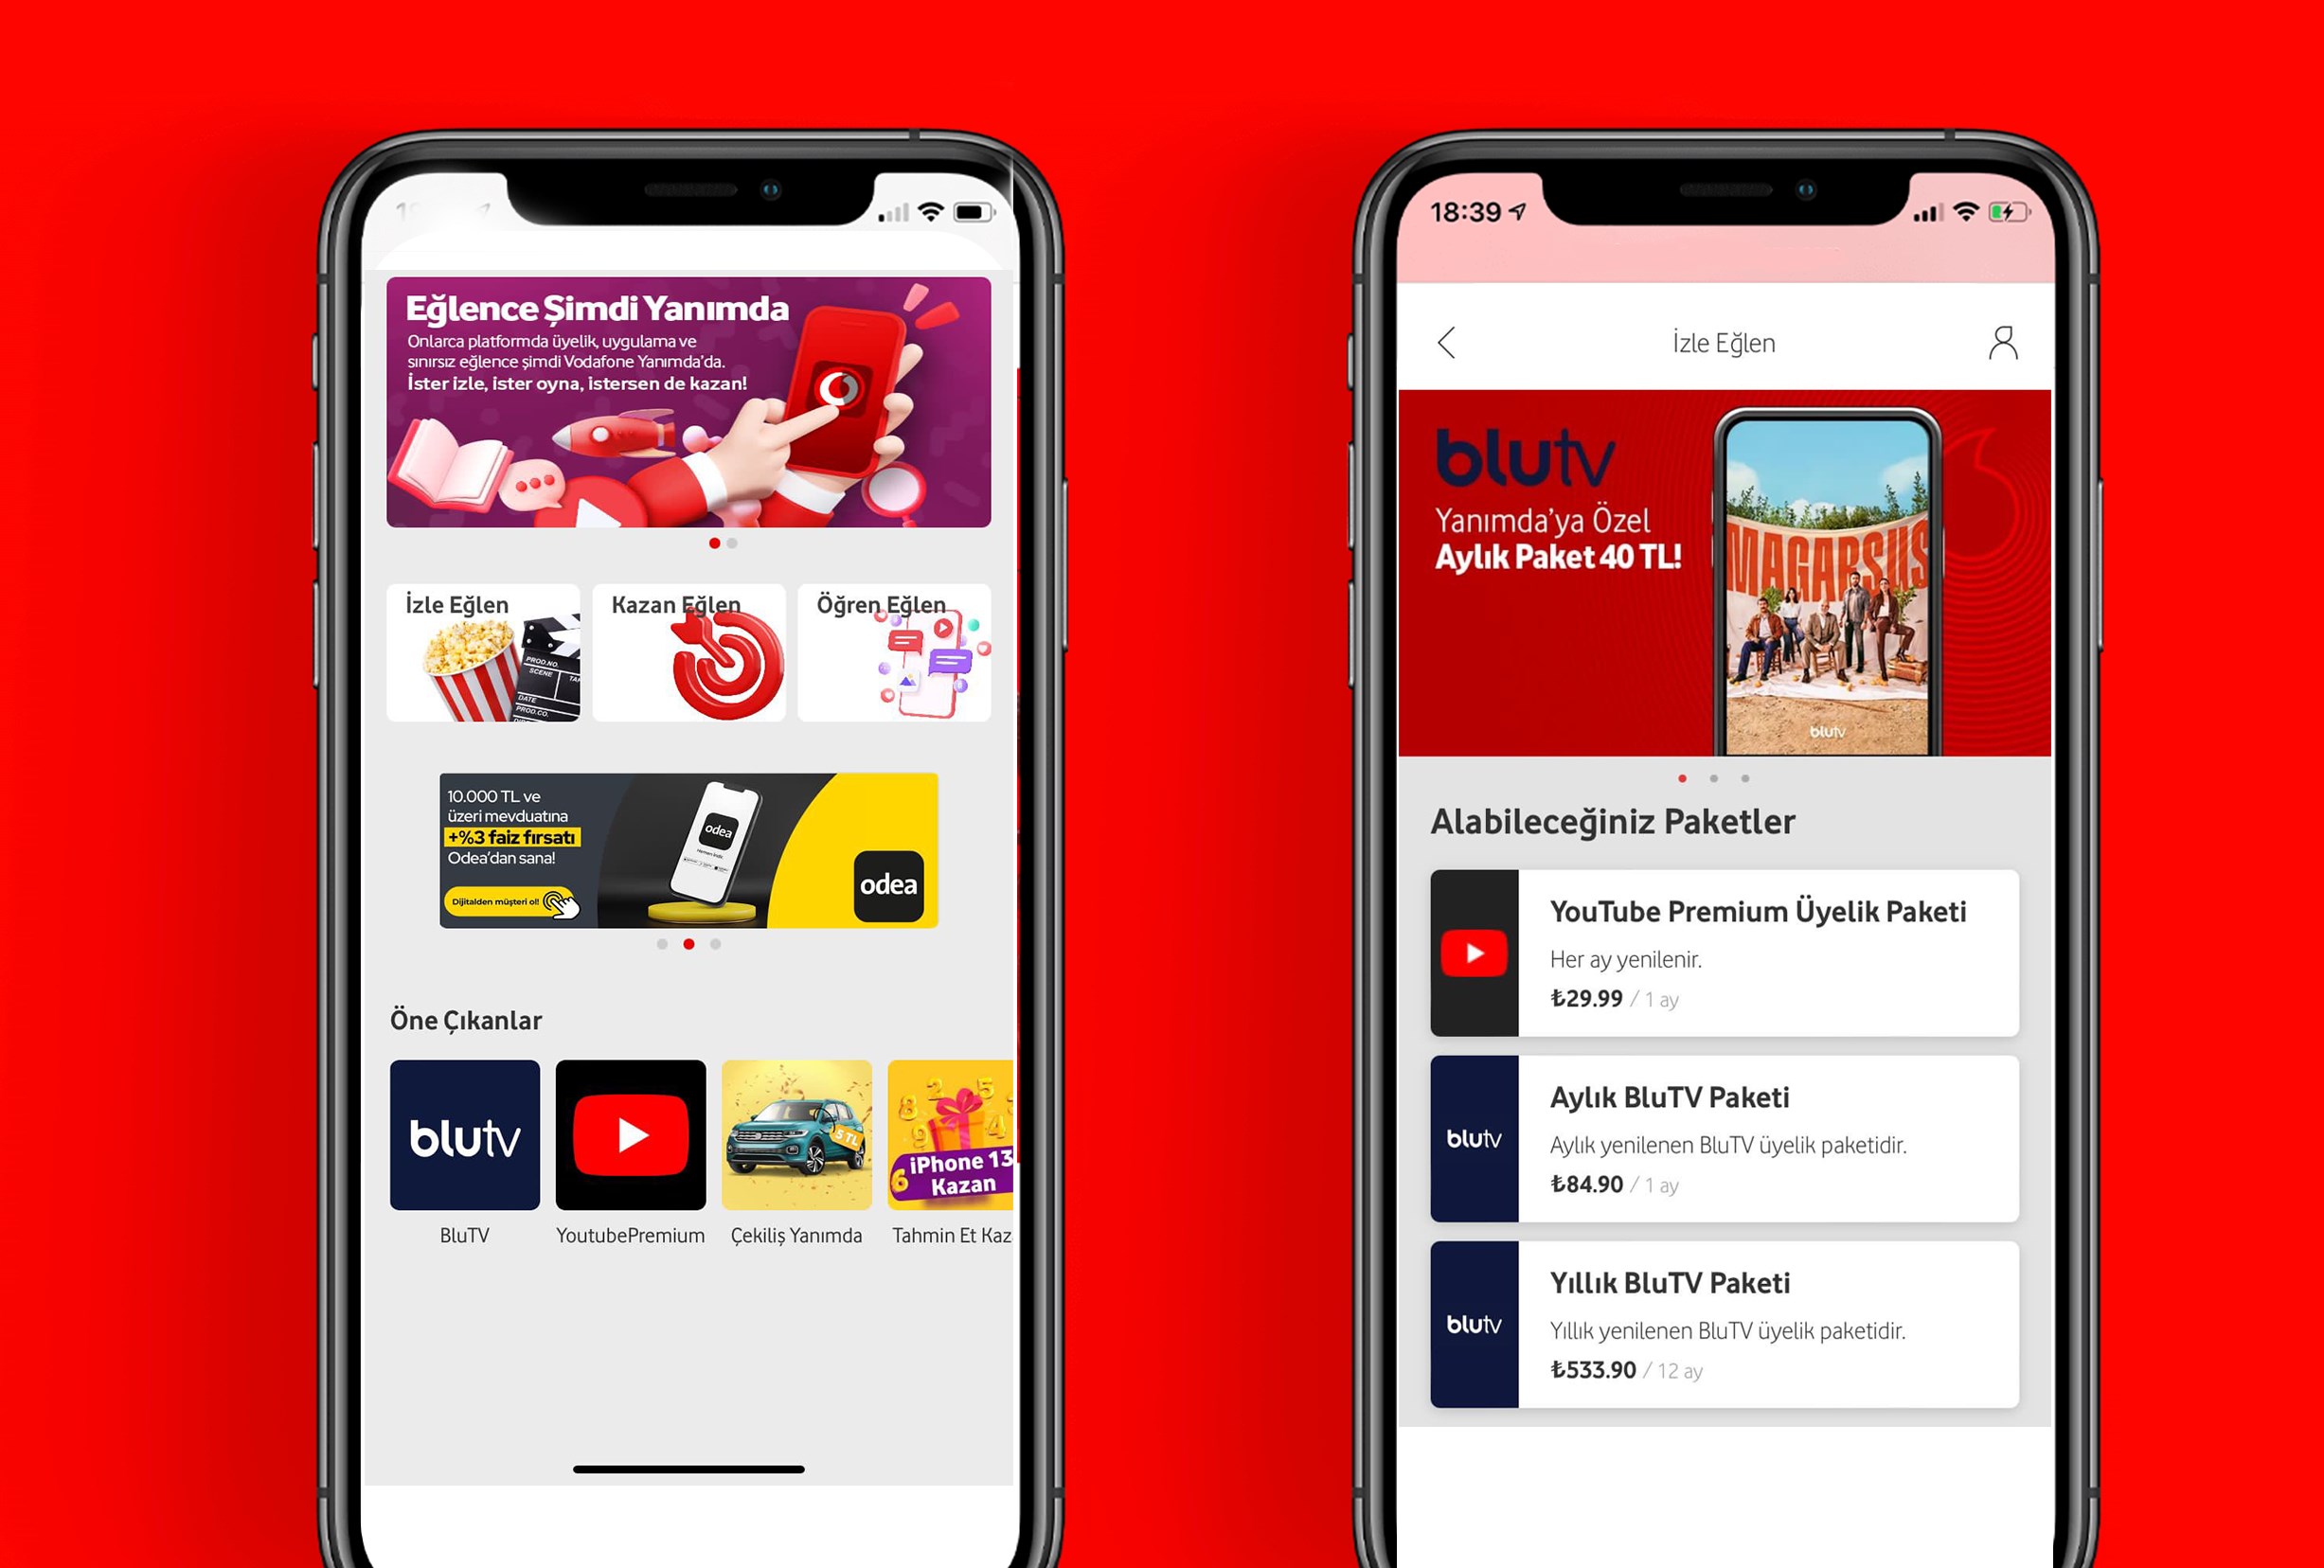 Vodafone Yanımda'ya Eğlence alanı eklendi! Youtube Premium 9,90TL